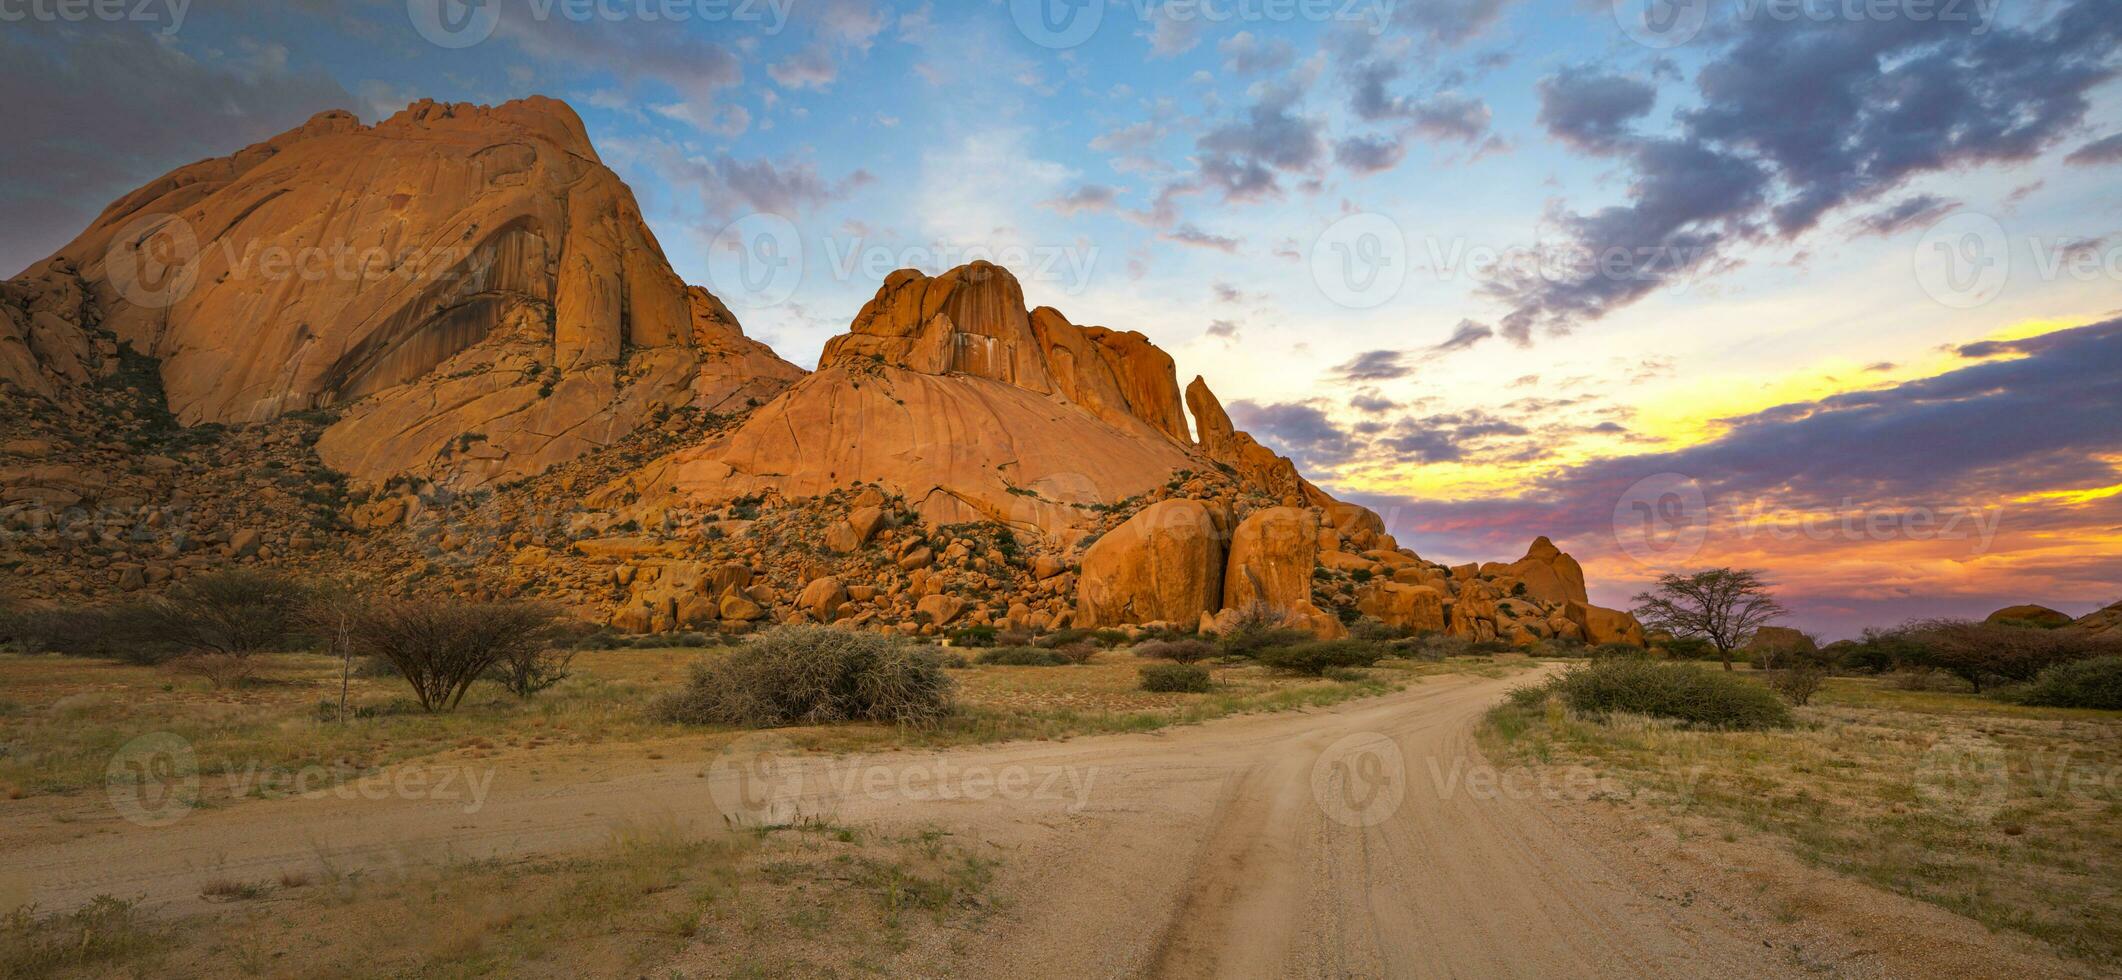 granito rocas de Spitzkoppe con amarillo y azul nubes a puesta de sol foto